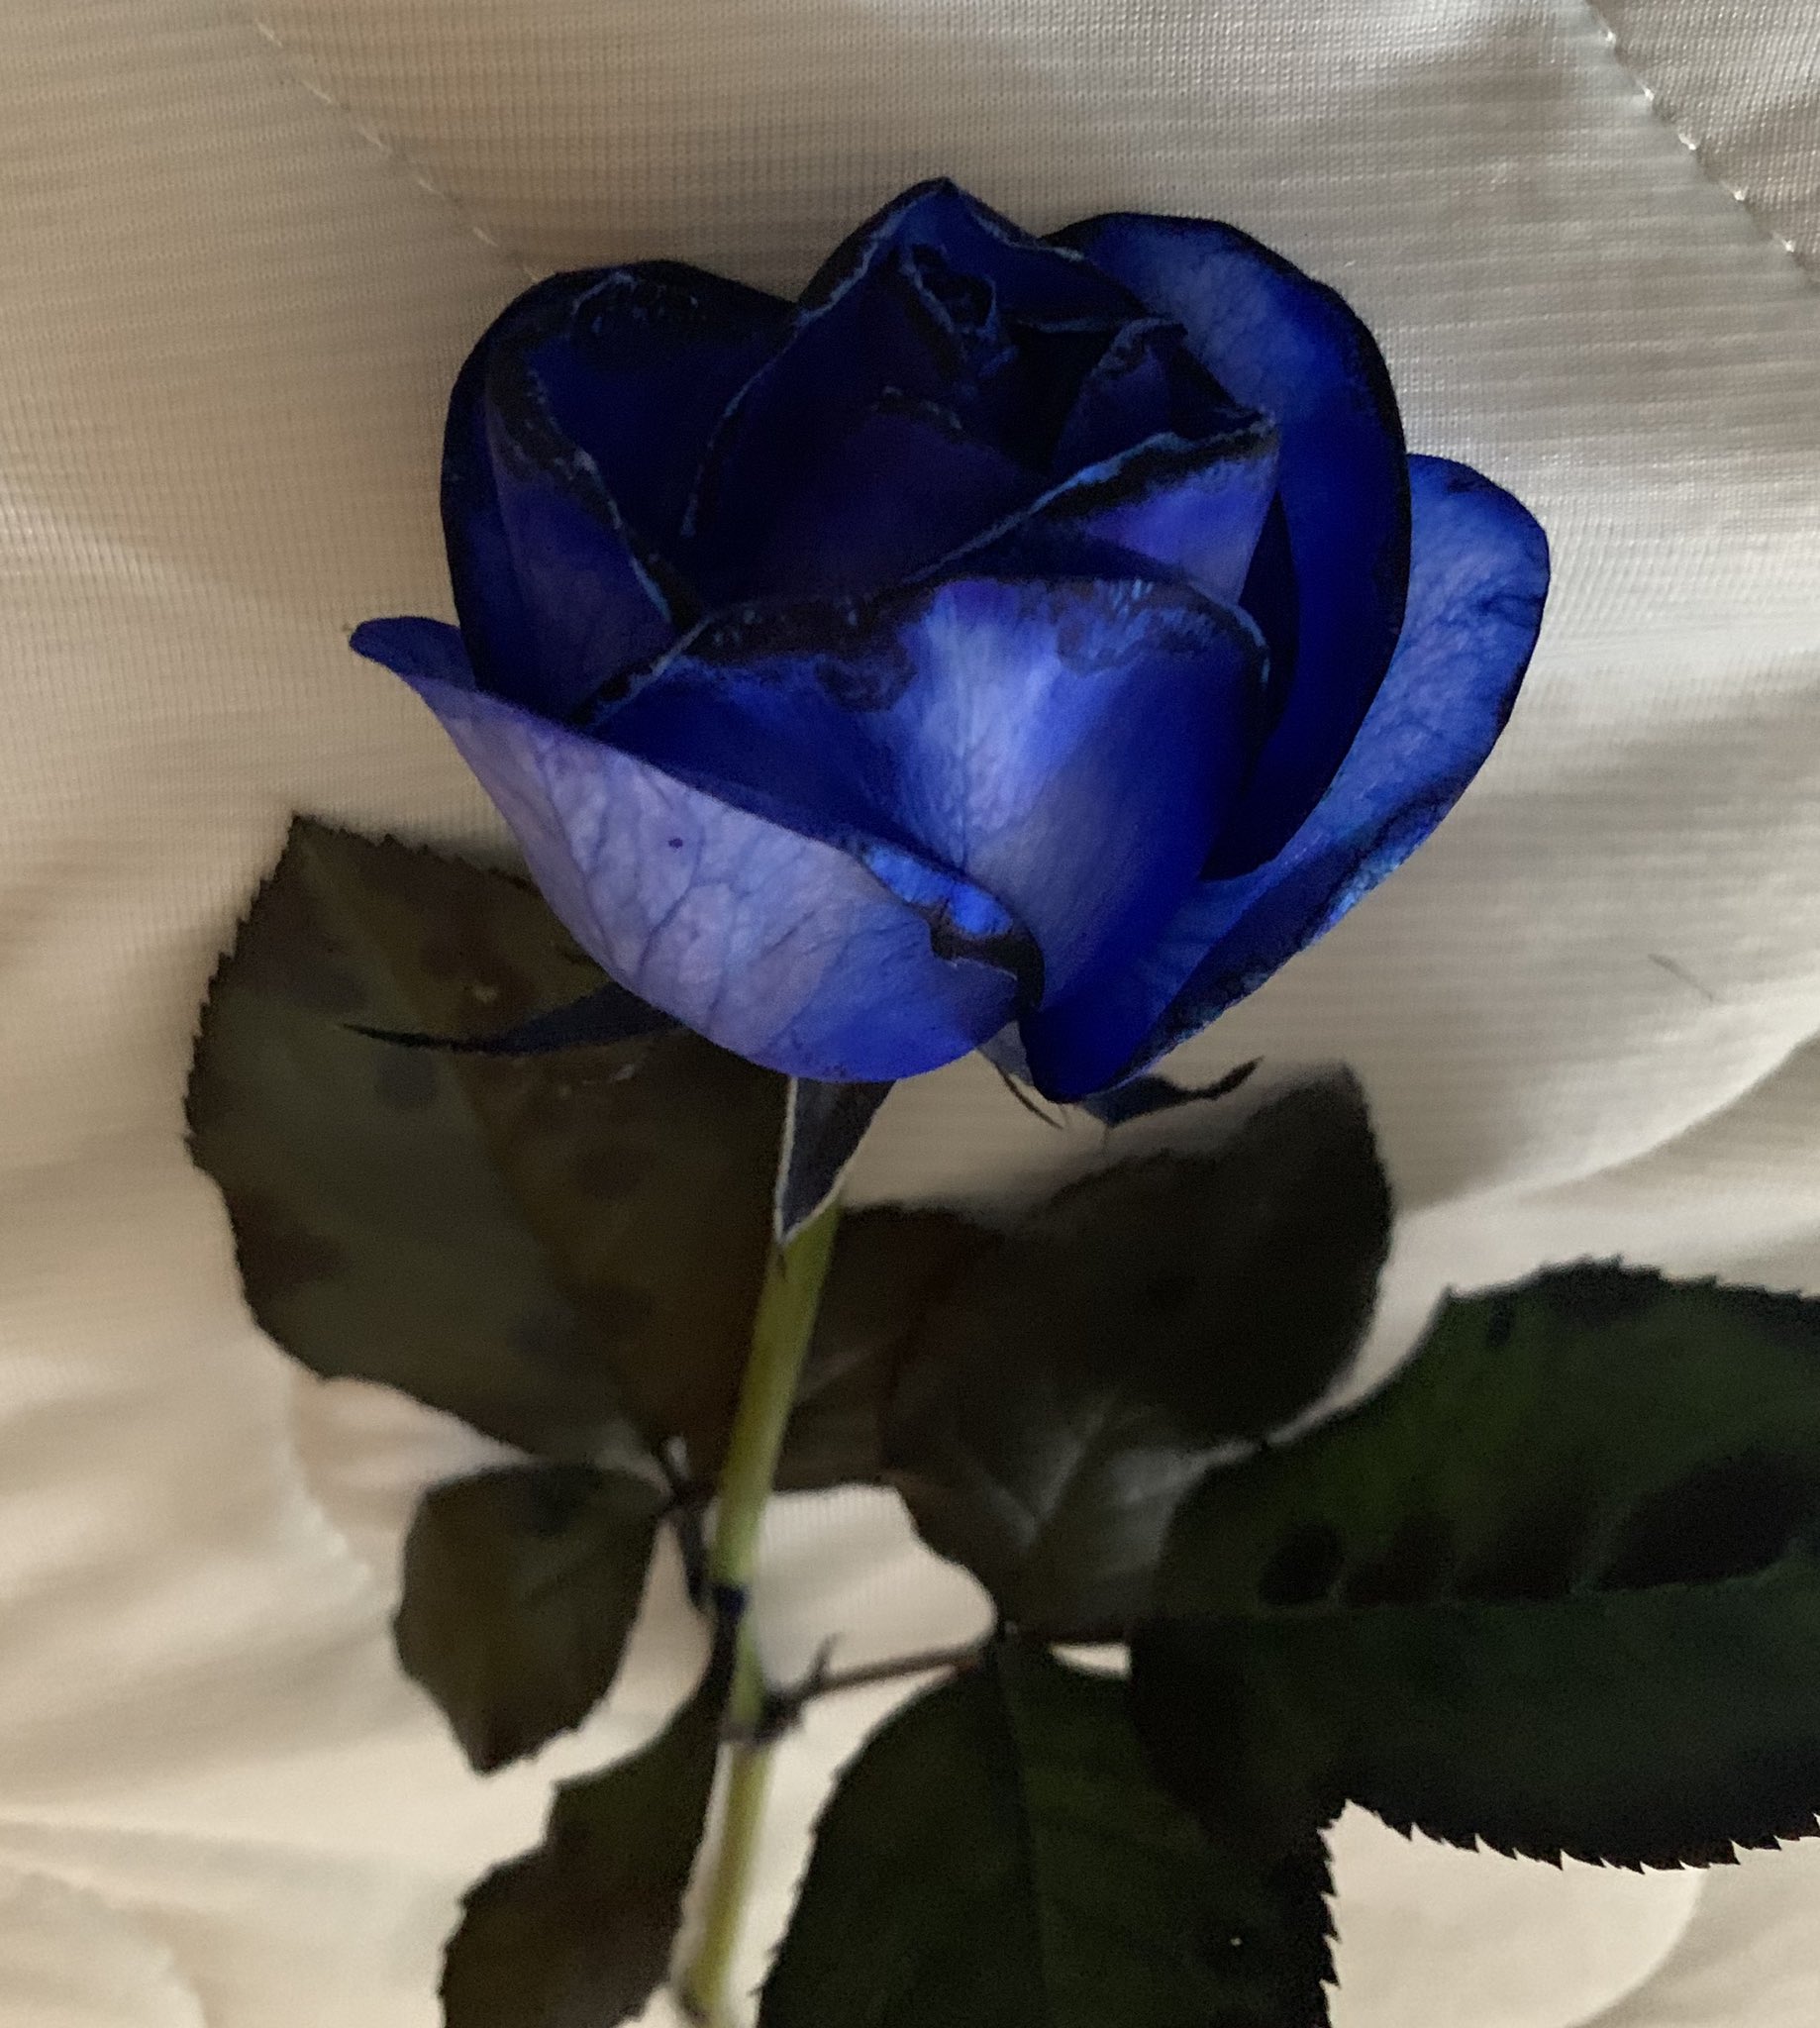 Yoiche 青い薔薇の花言葉は 夢かなう かつては不可能 存在しないものなどマイナスイメージだったが 02年 日本の研究者たちが遺伝子の組み替えによって世界初の青いバラを誕生させ 花言葉 も変わった イエローモンキー再集結など今までいくつもの夢